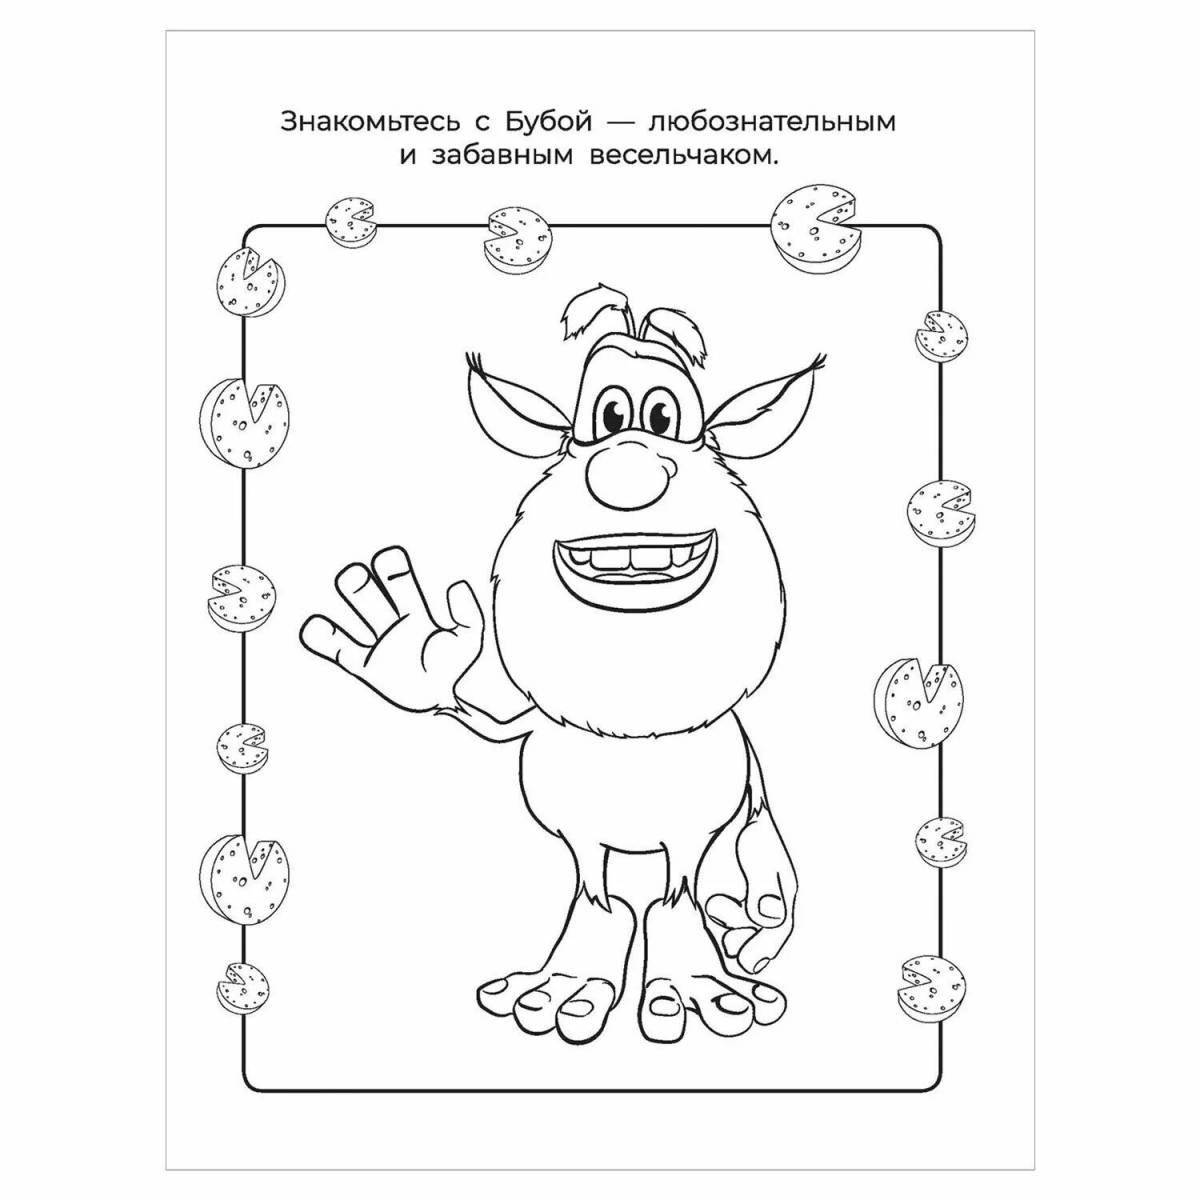 A fun buba coloring book for kids